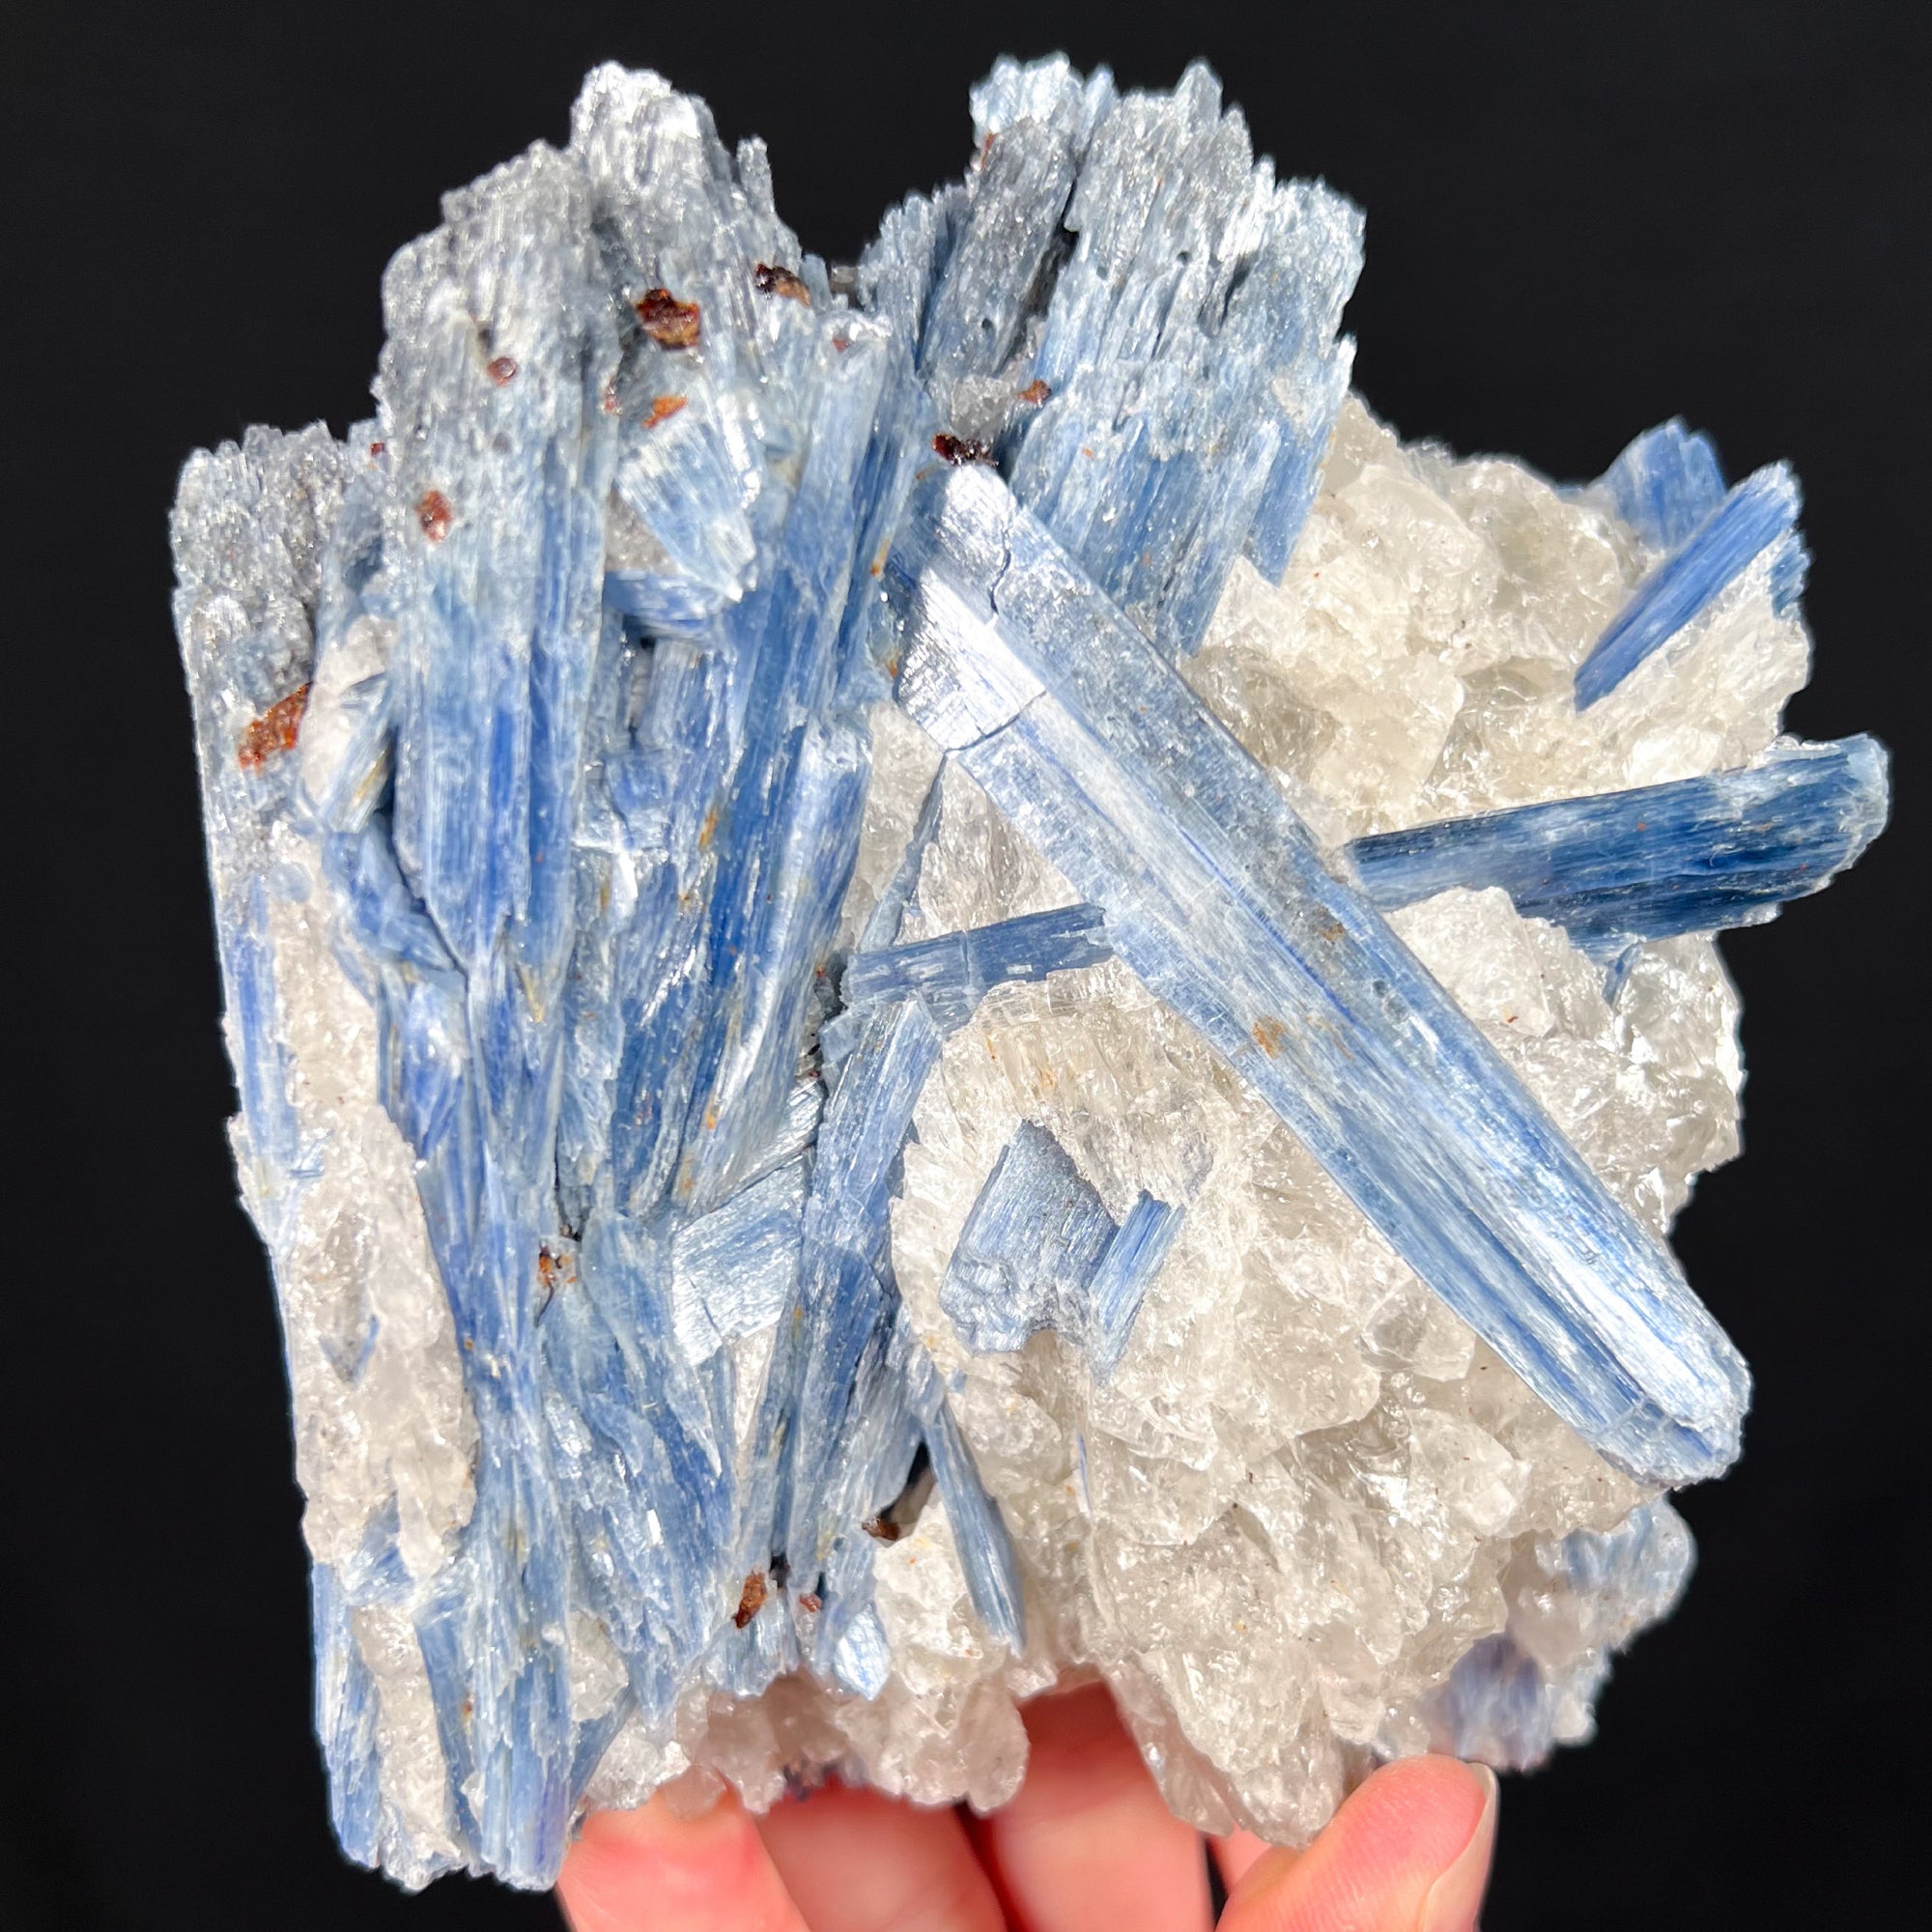 Blue Kyanite with Quartz and Staurolite Mineral Specimen